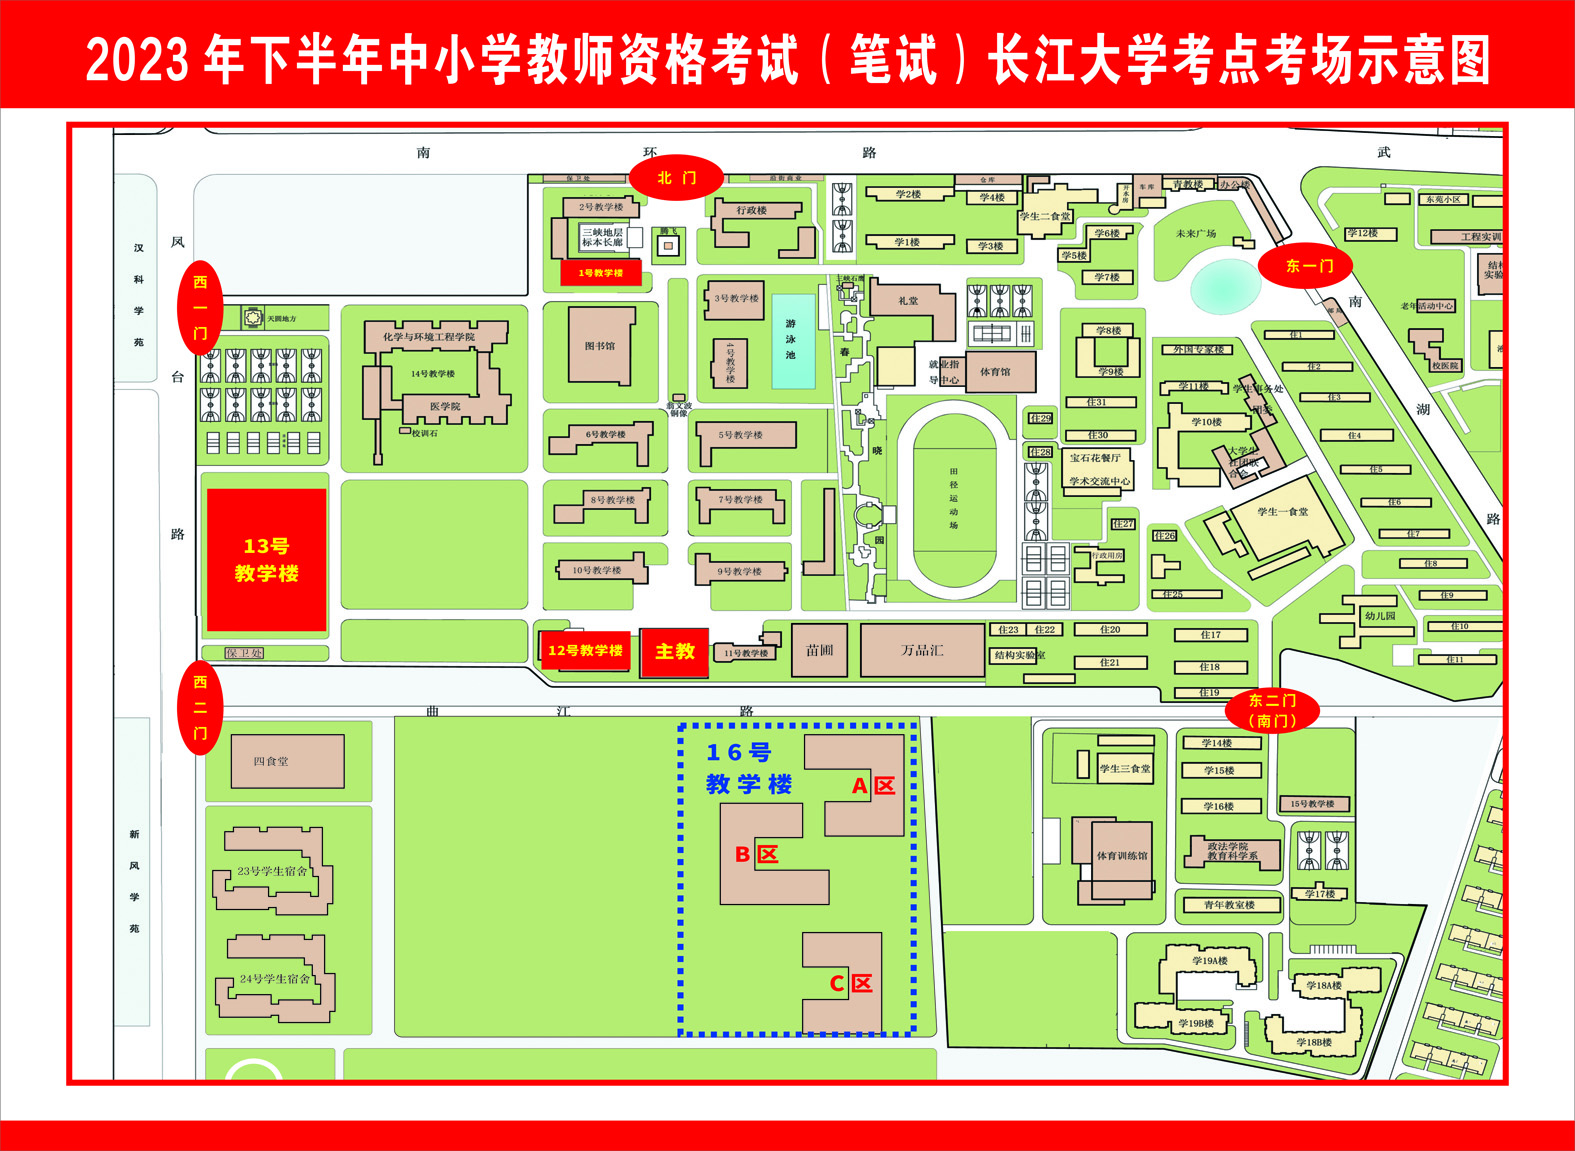 长江大学东校区教师资格笔试考场位置示意图2.jpg